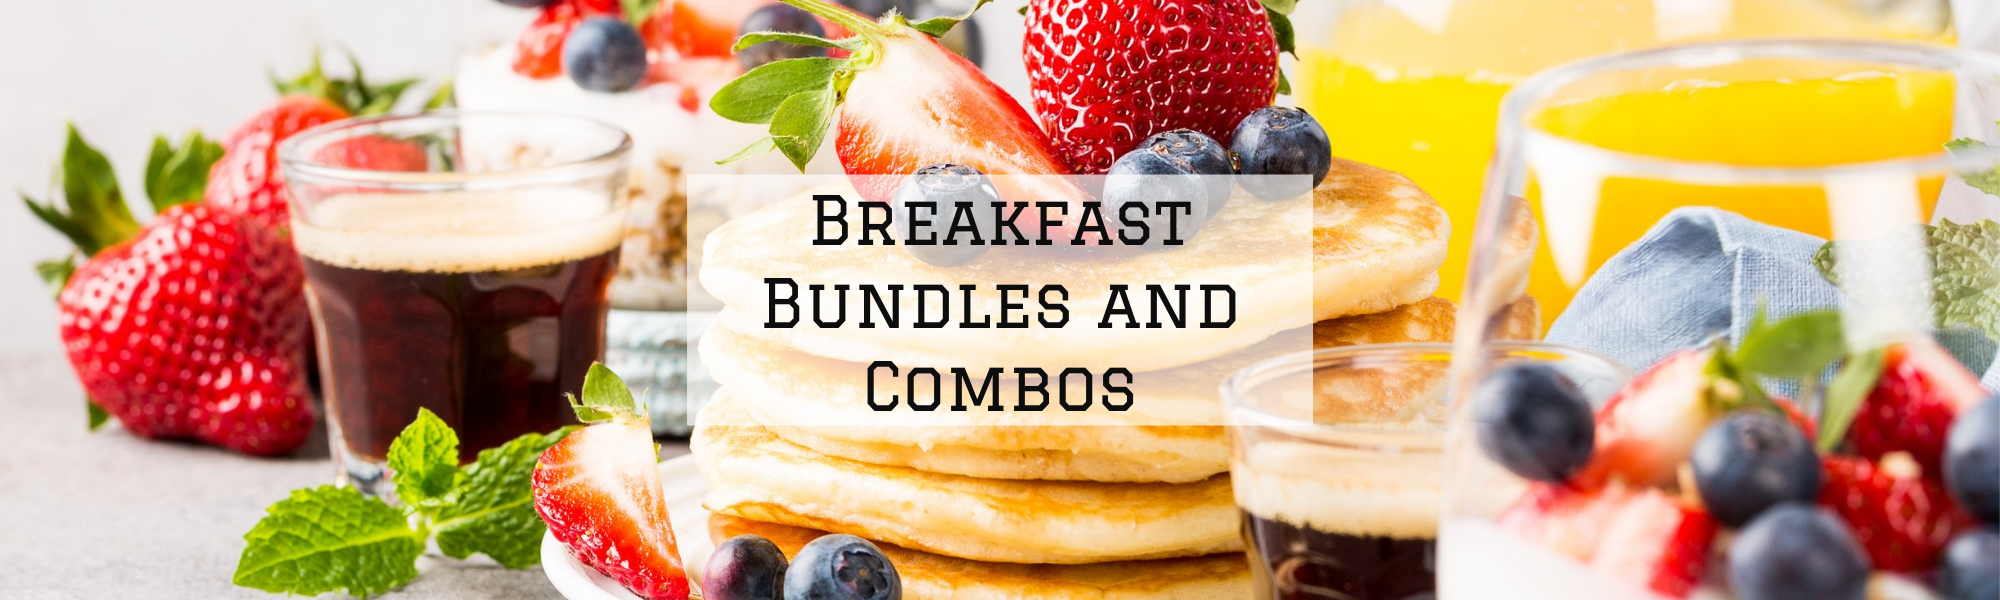 Breakfast Bundles and Combos